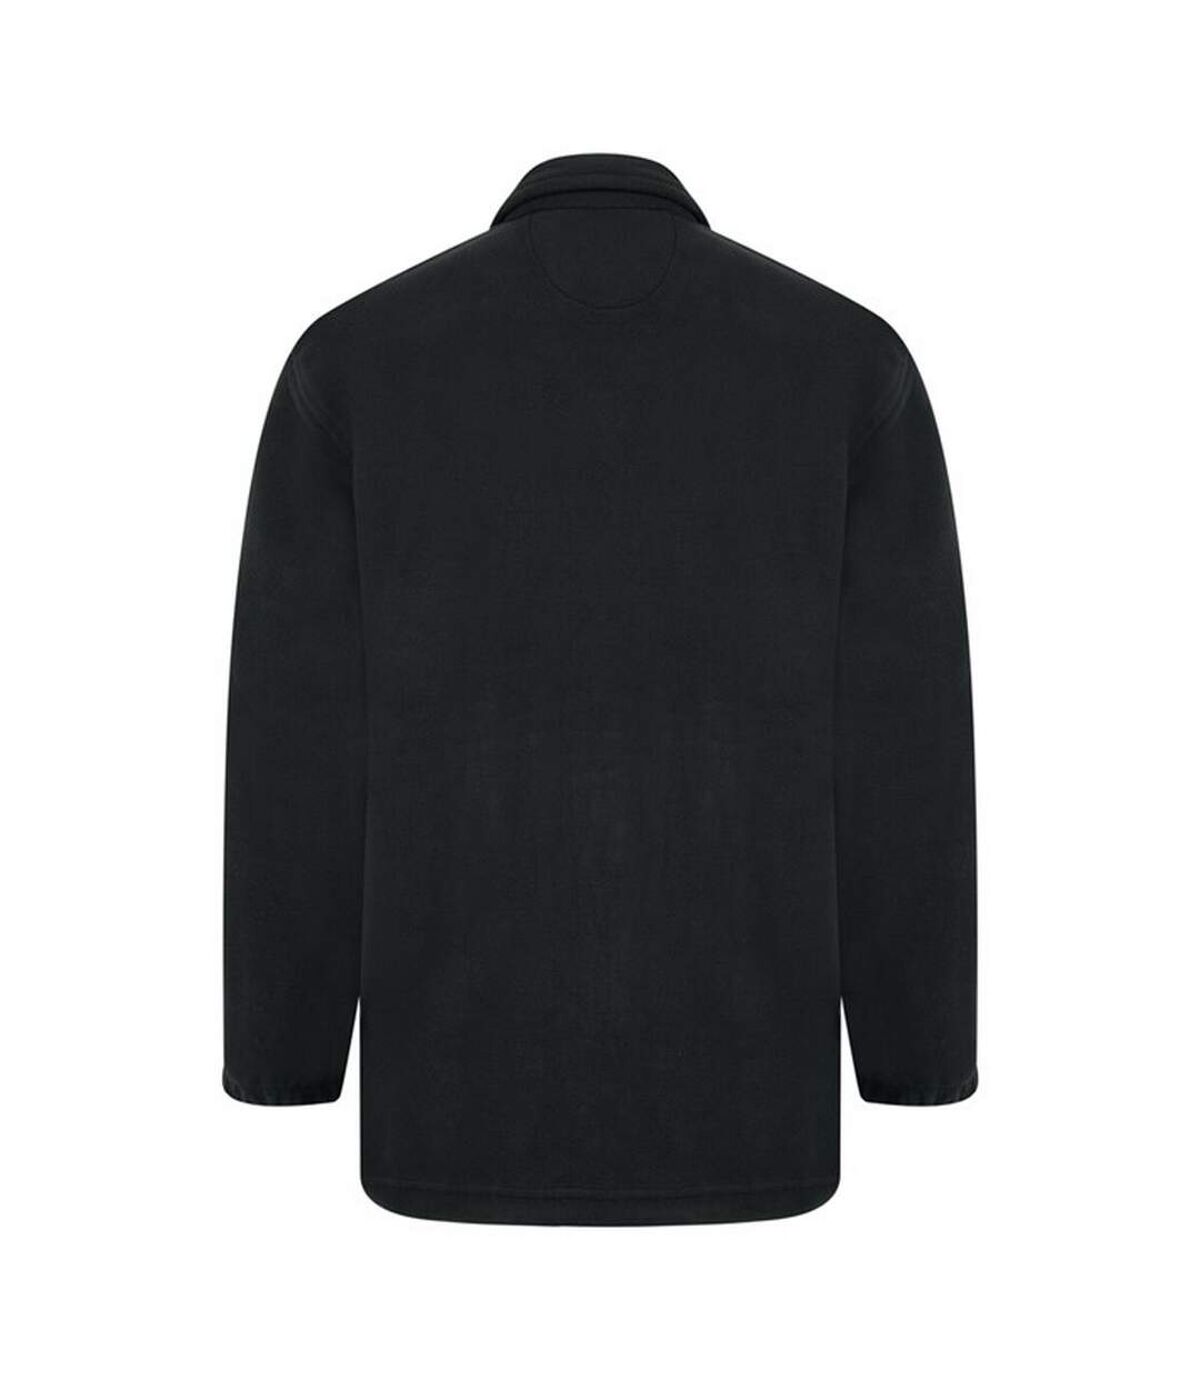 Absolute Apparel Heritage Full Zip Fleece (Black Opal) - UTAB128